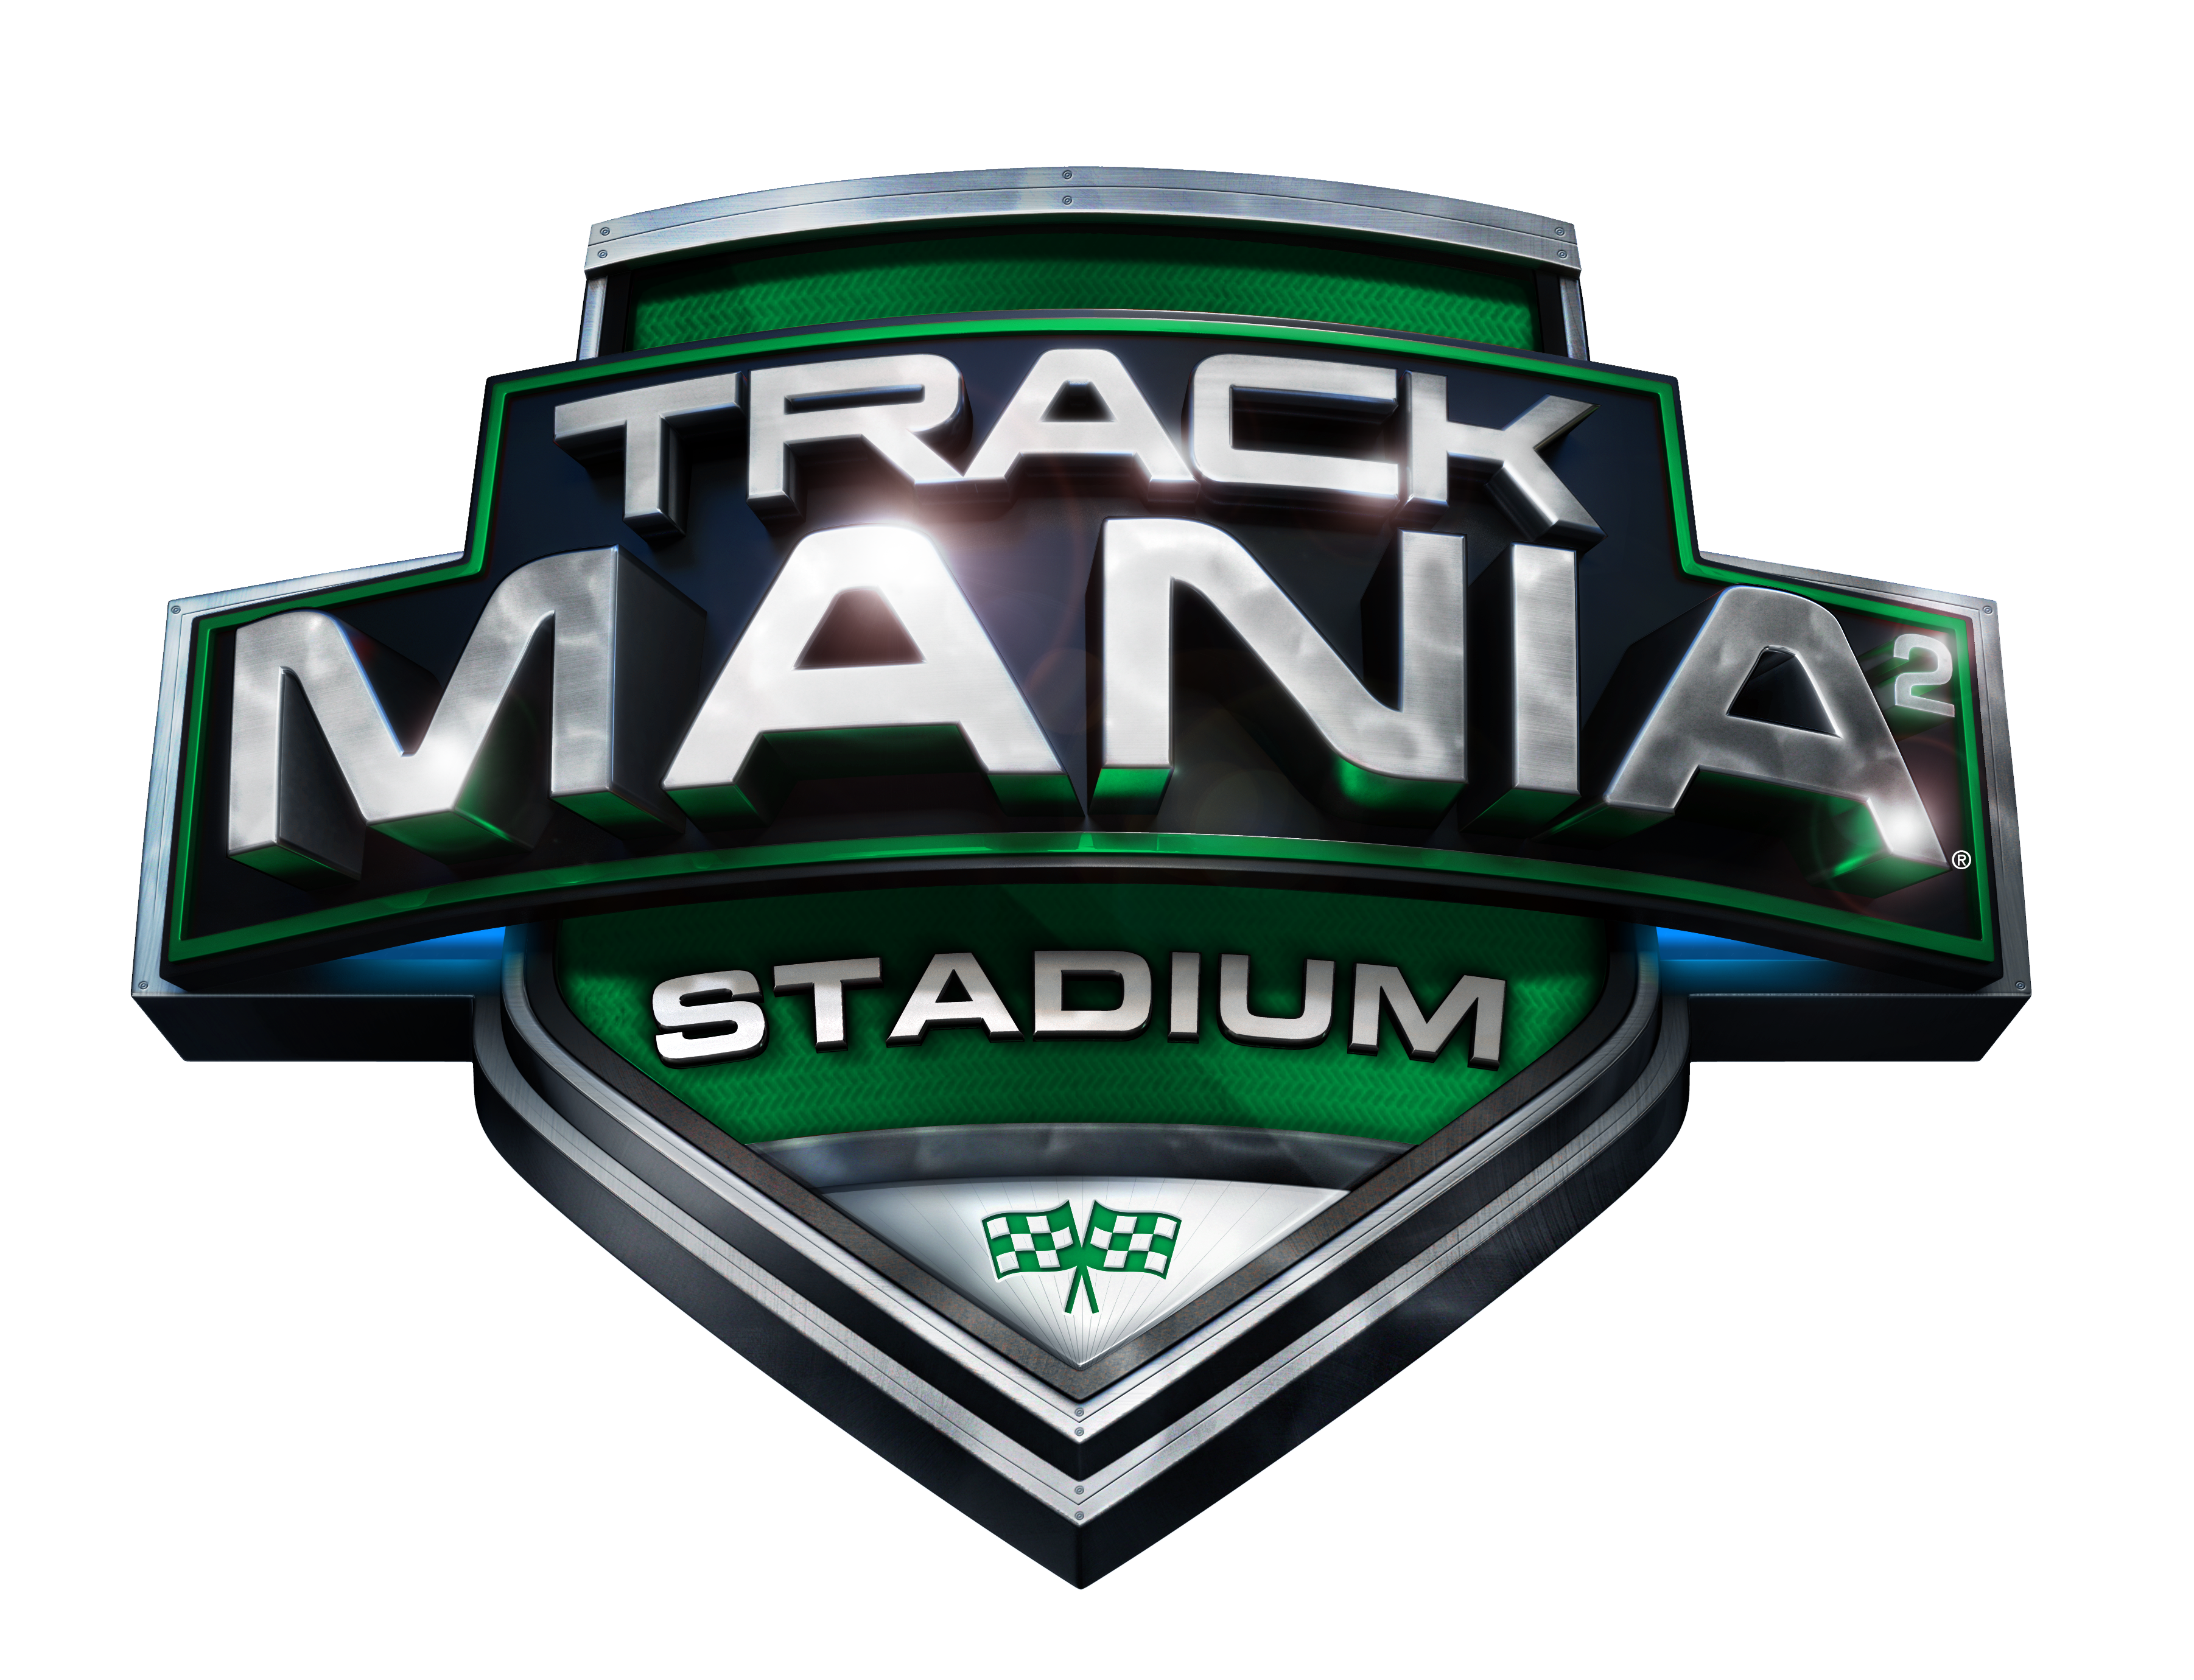 trackmania 2 stadium playerbase